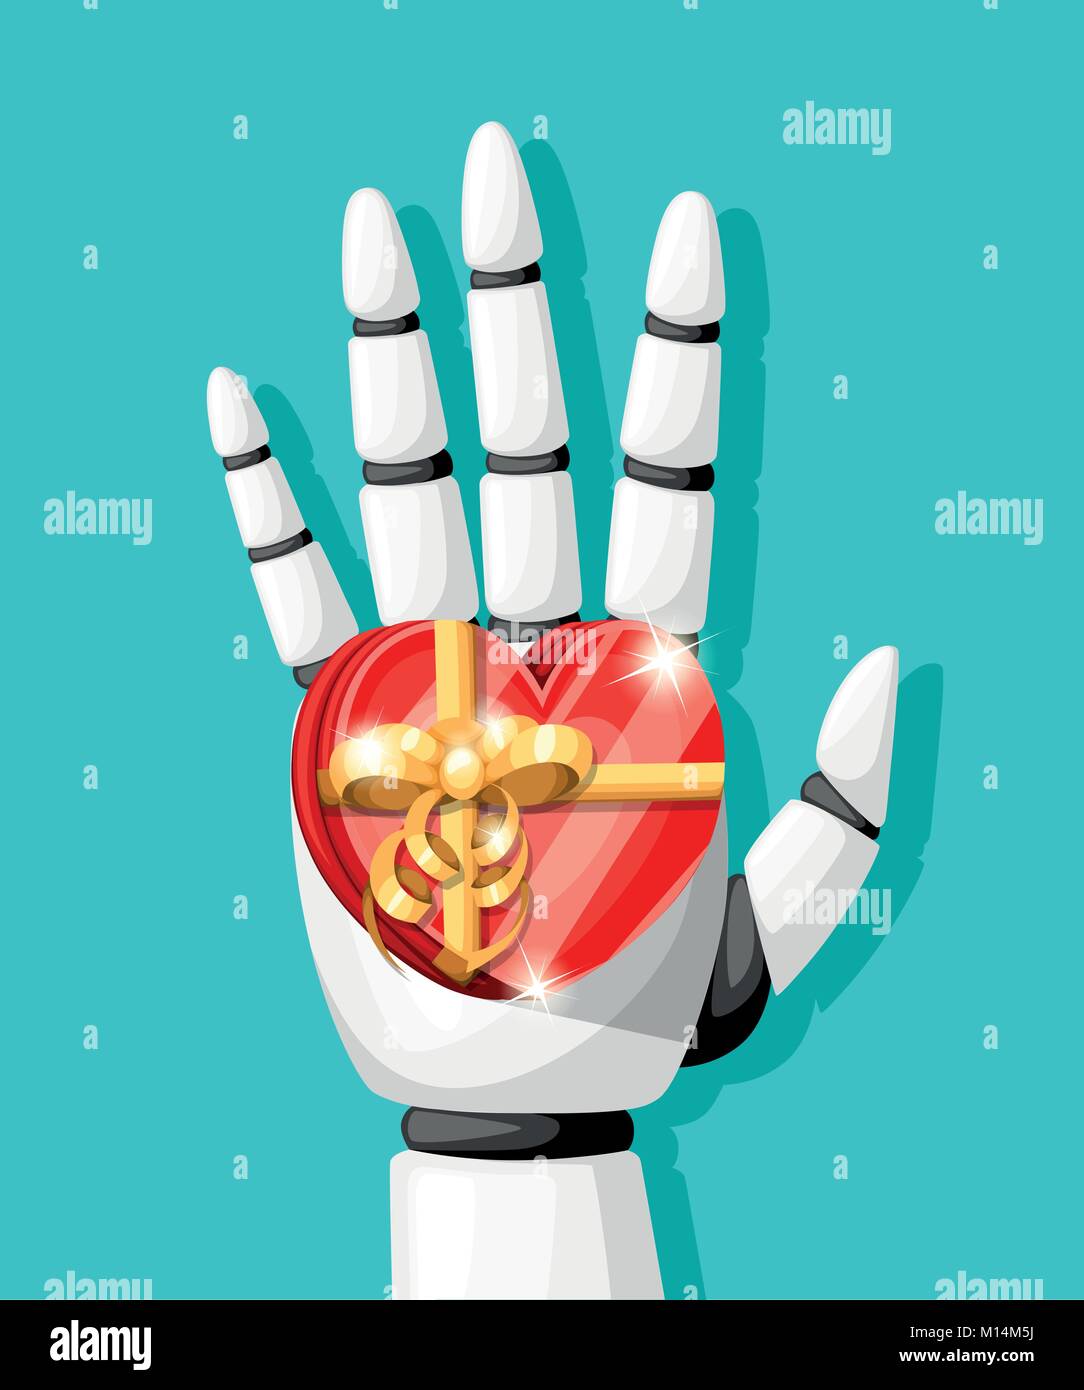 Robot blanc main ou bras robotique pour prothèse détient un don sous la forme d'un coeur avec un arc d'or vector illustration isolé sur fond bleu turquoise page de site web et mobile app design Illustration de Vecteur